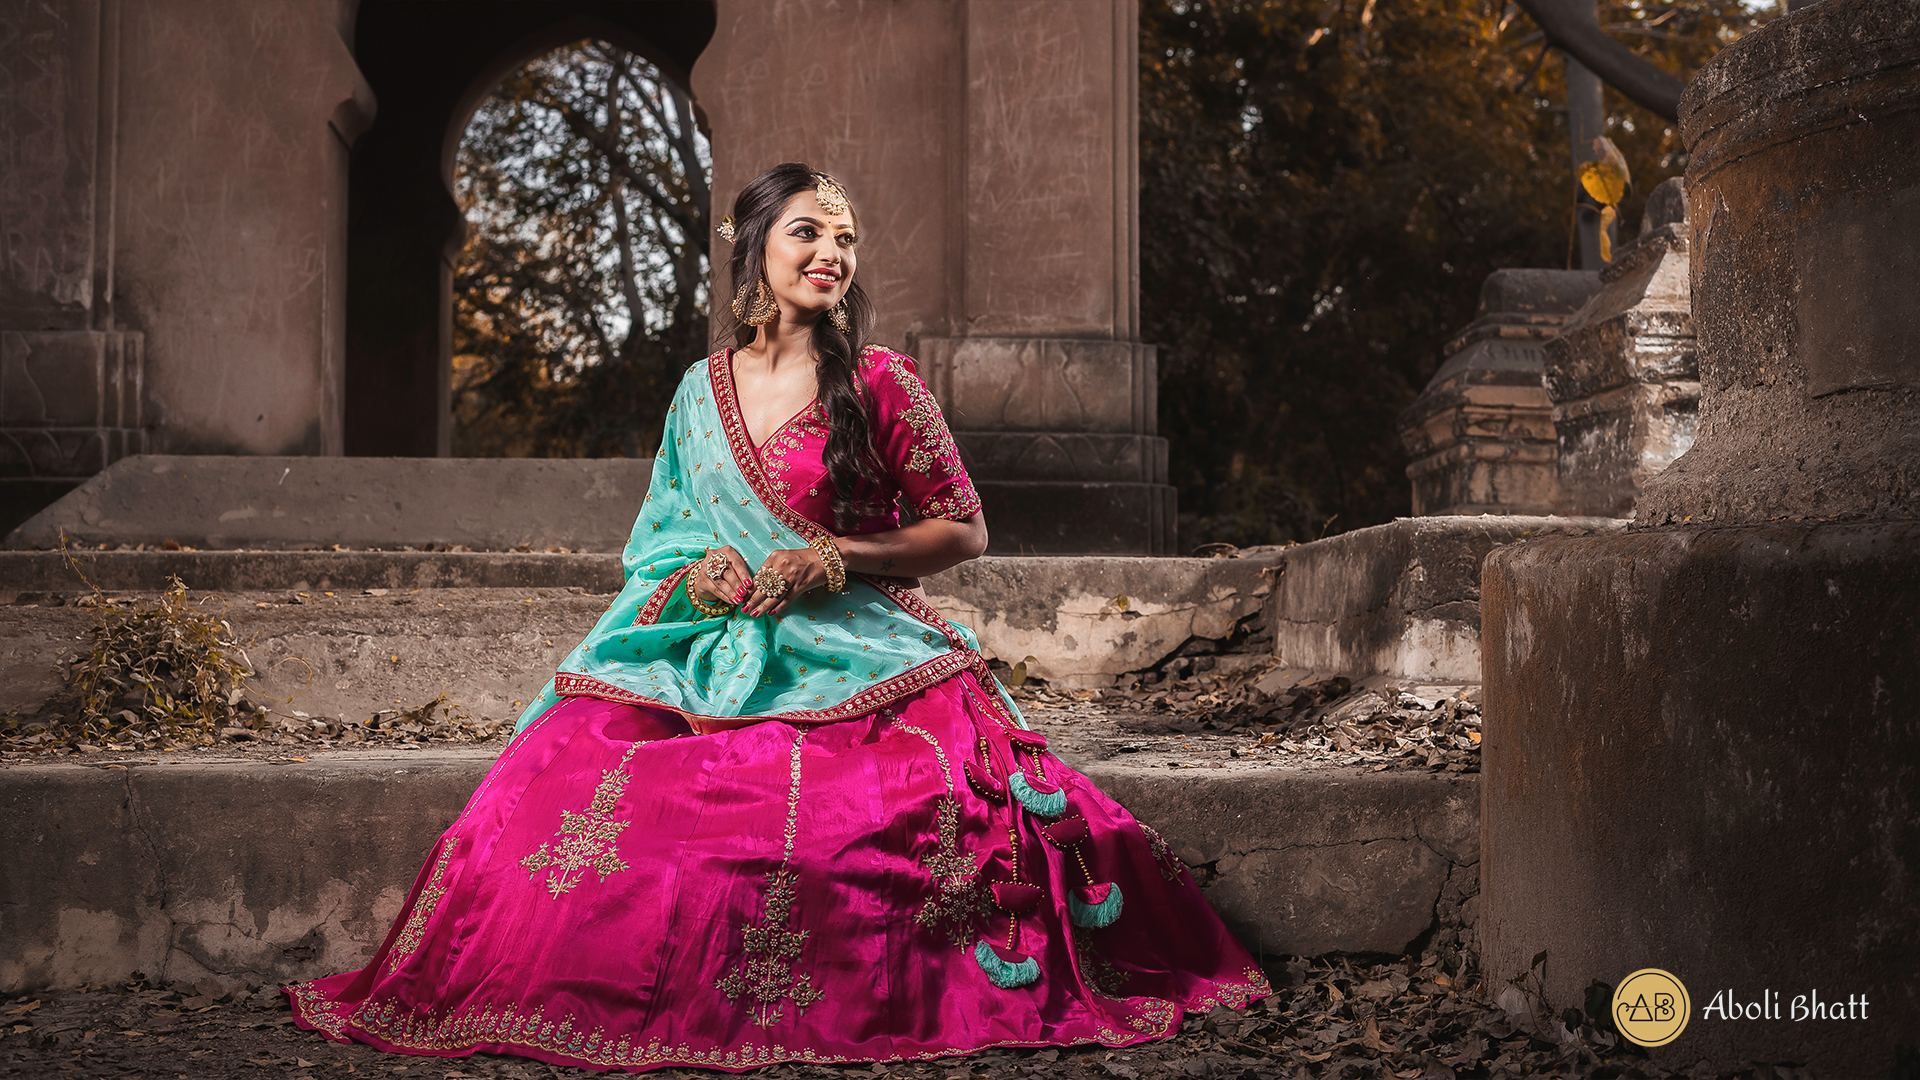 Best Bridal Lehenga designs this wedding season! | Photoshoot dress, Indian  wedding photography poses, Indian photoshoot